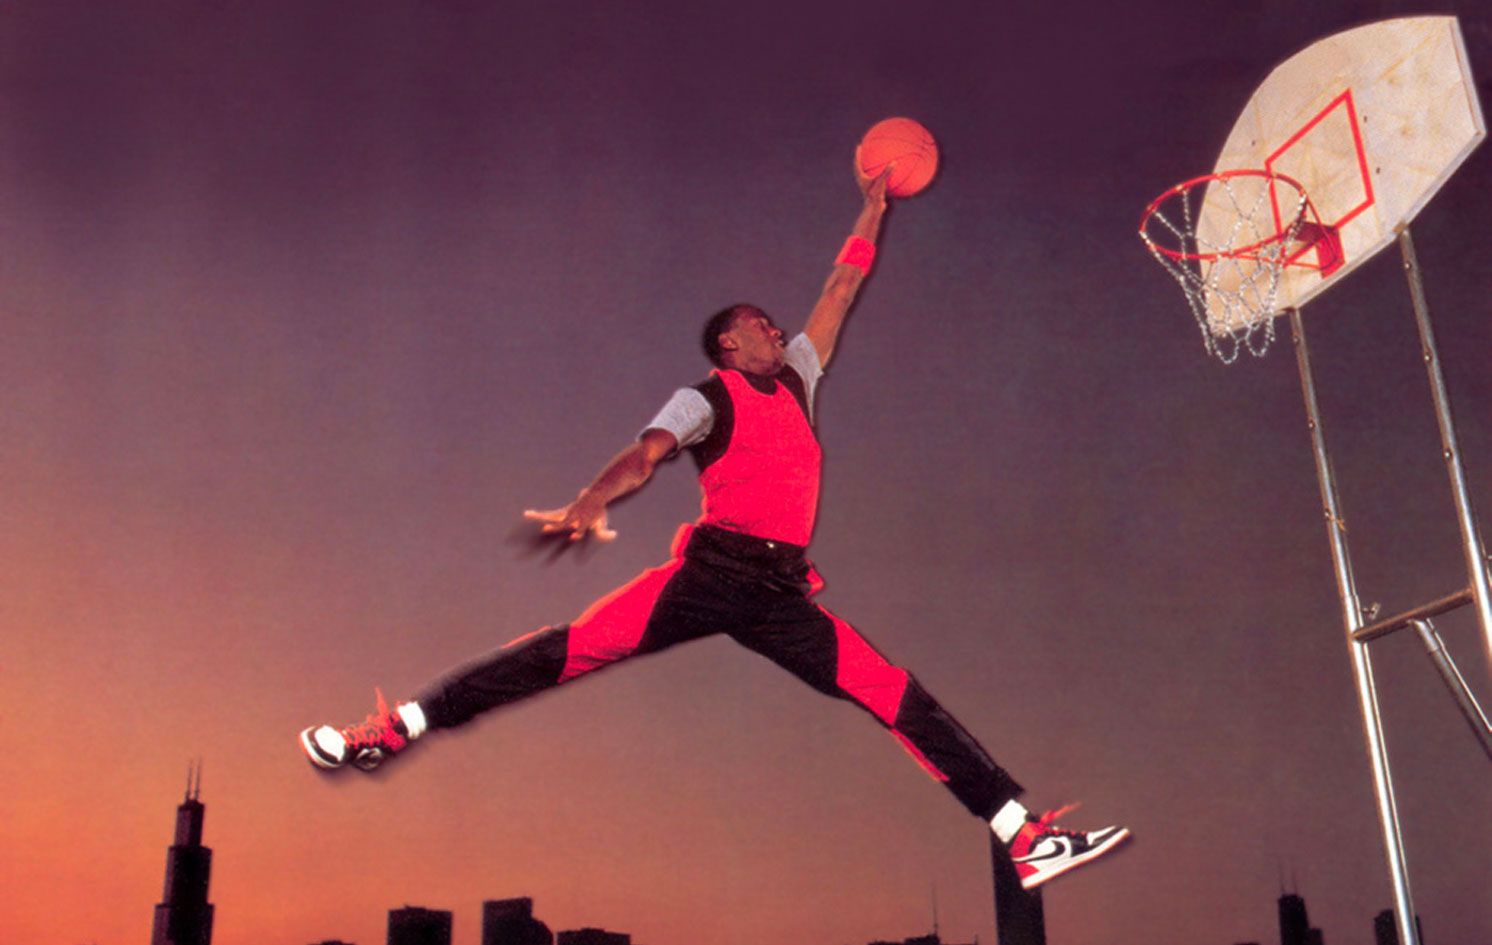 Original Jordan Jumpman logo from 1985 with Jordan jumping in the air in a symmetrical pose.